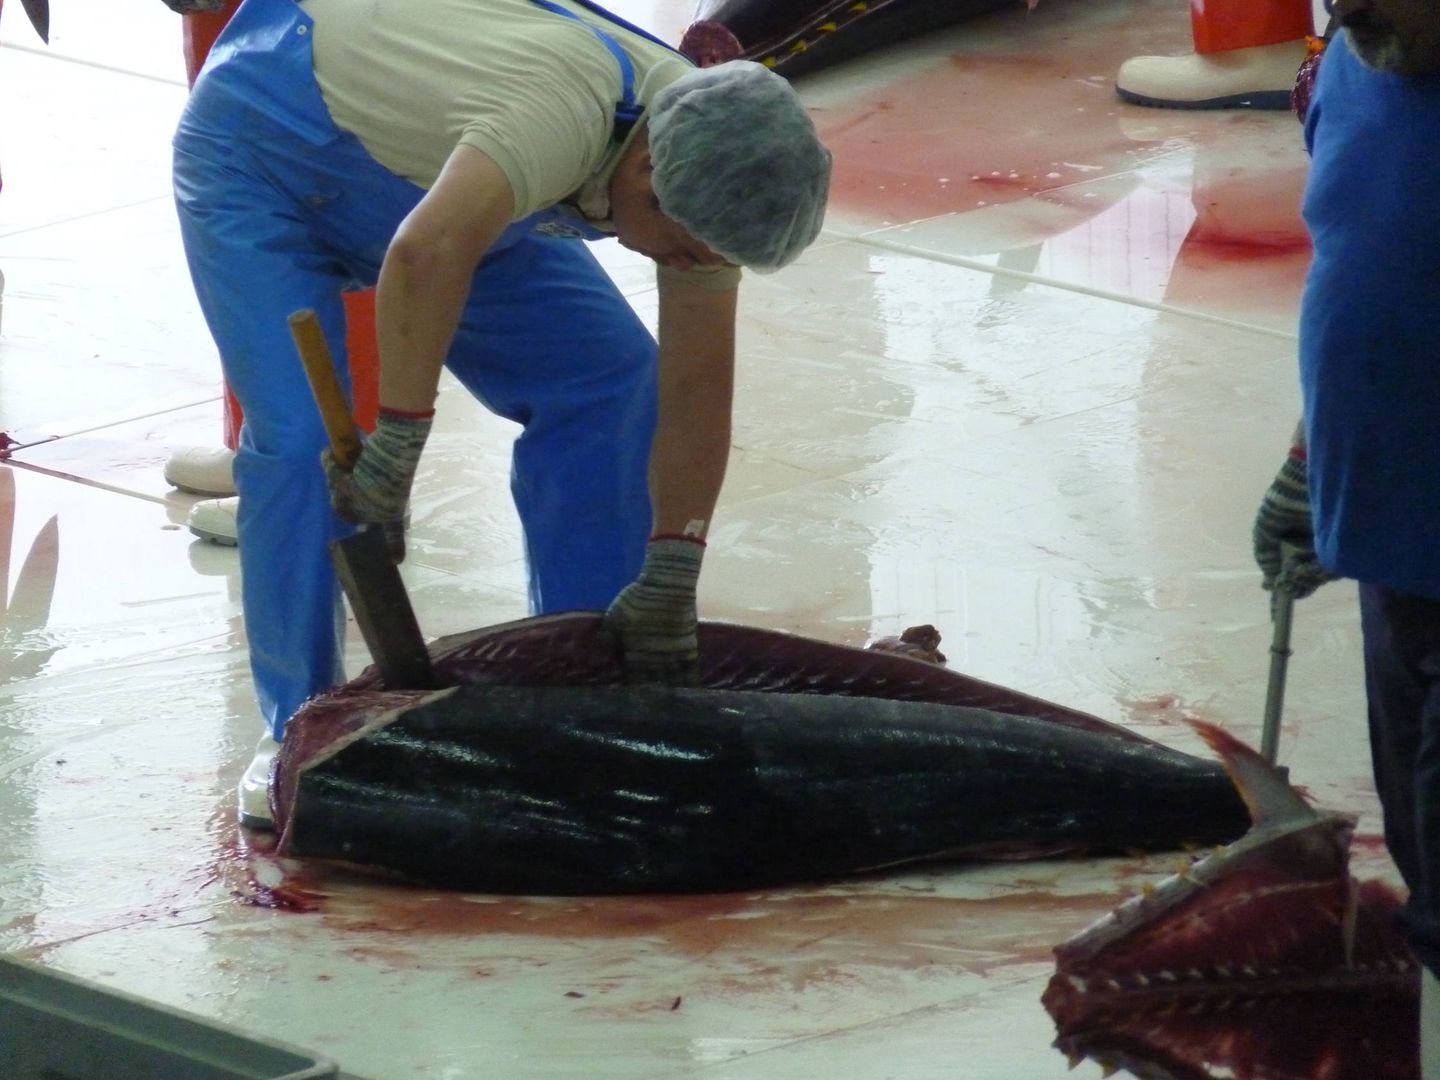 Experto japonés en el ronqueo despieza atún rojo en Barbate tras la matanza en la almadraba. (M. García Rey / ICIJ)